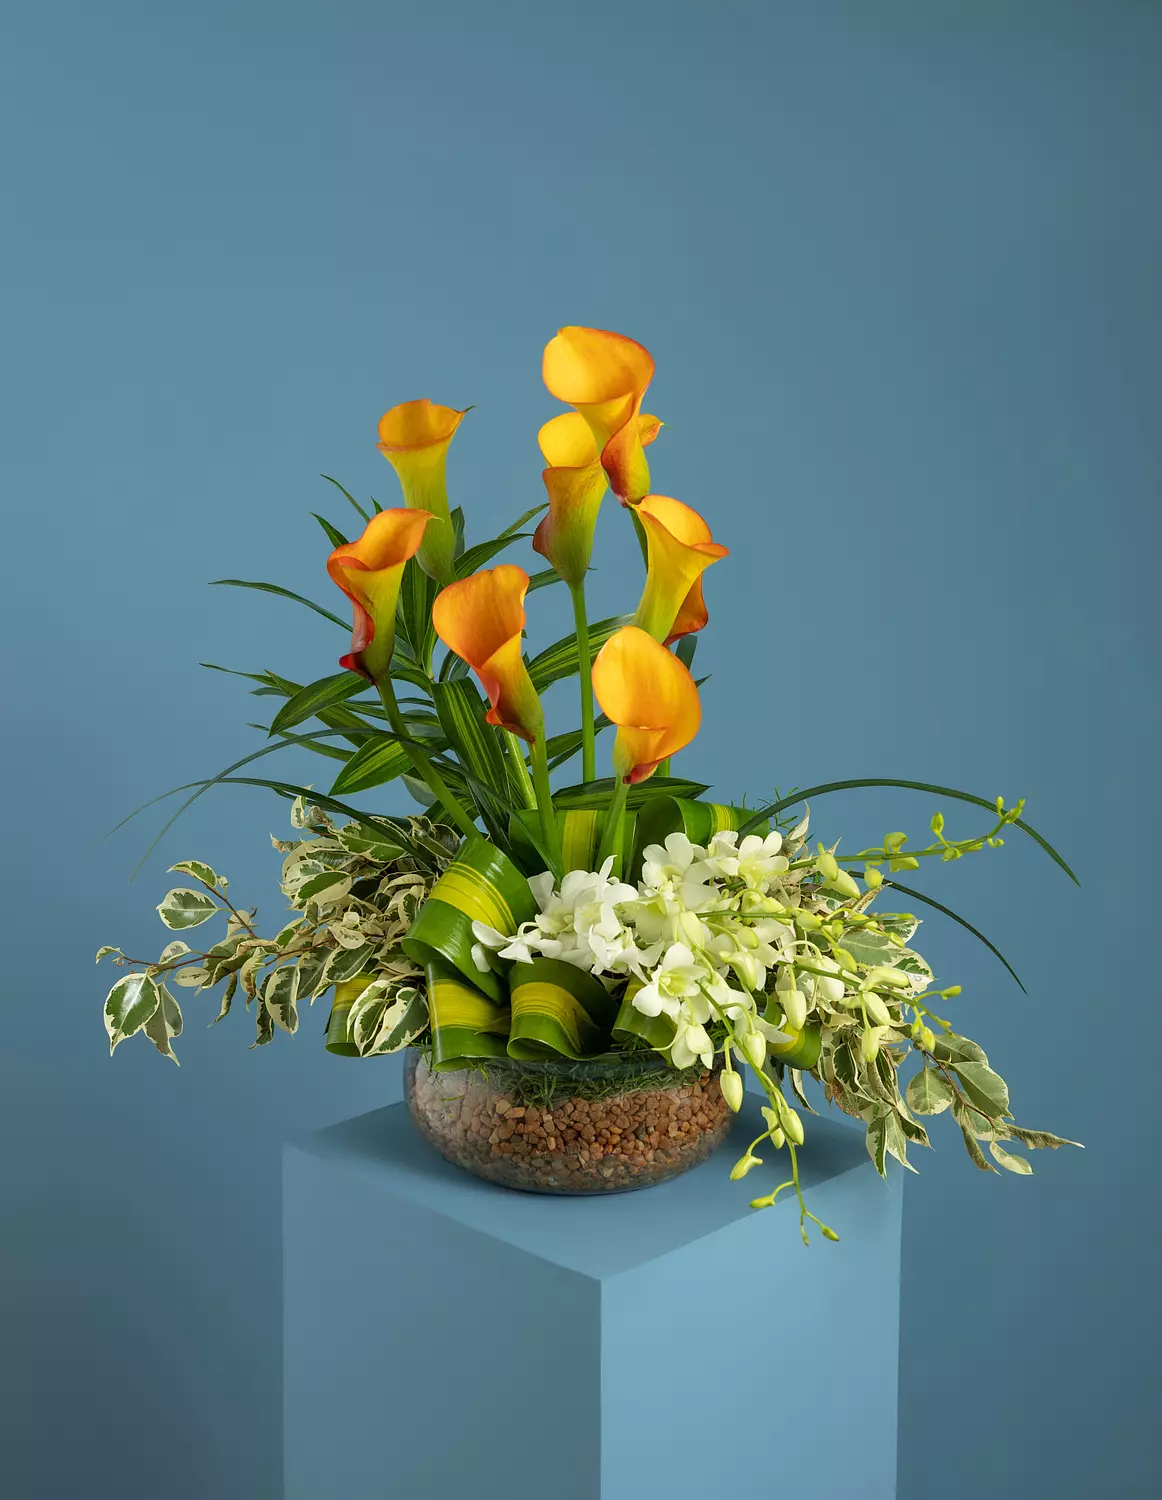 Growing Love Flower Vase 0